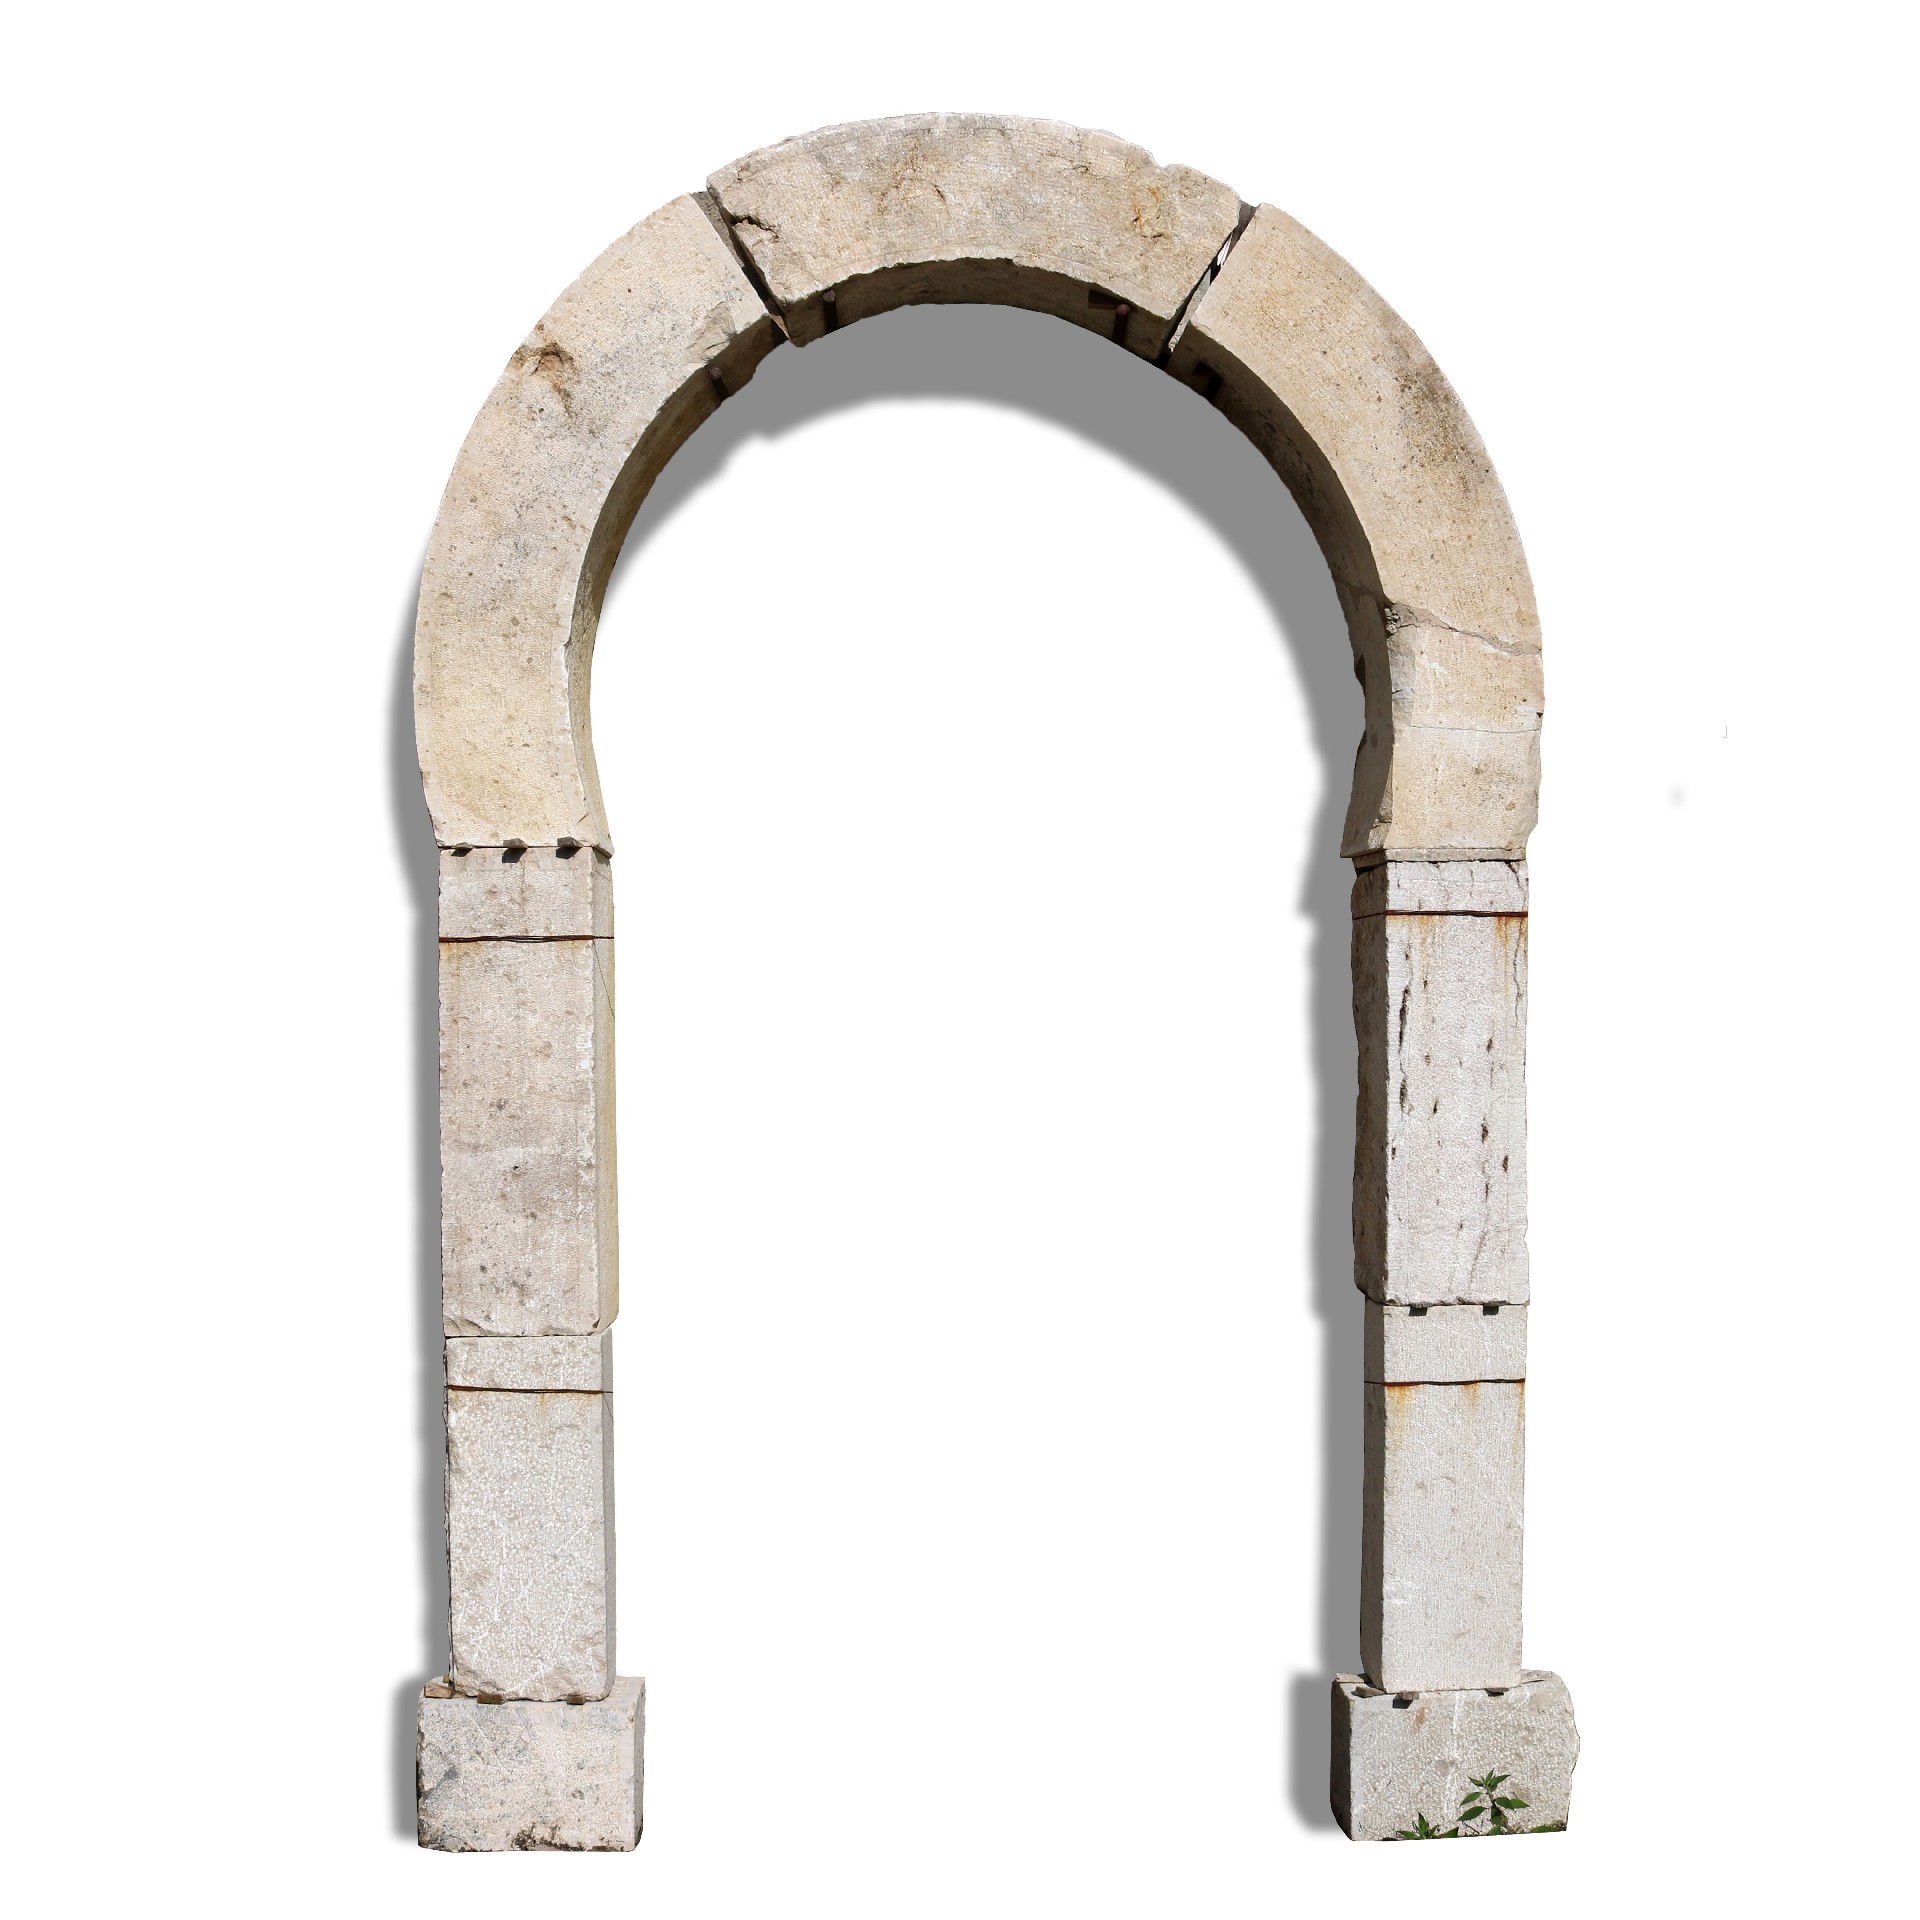 Portale antico in pietra. - Portali, Finestre e Cornici - Architettura - Prodotti - Antichità Fiorillo